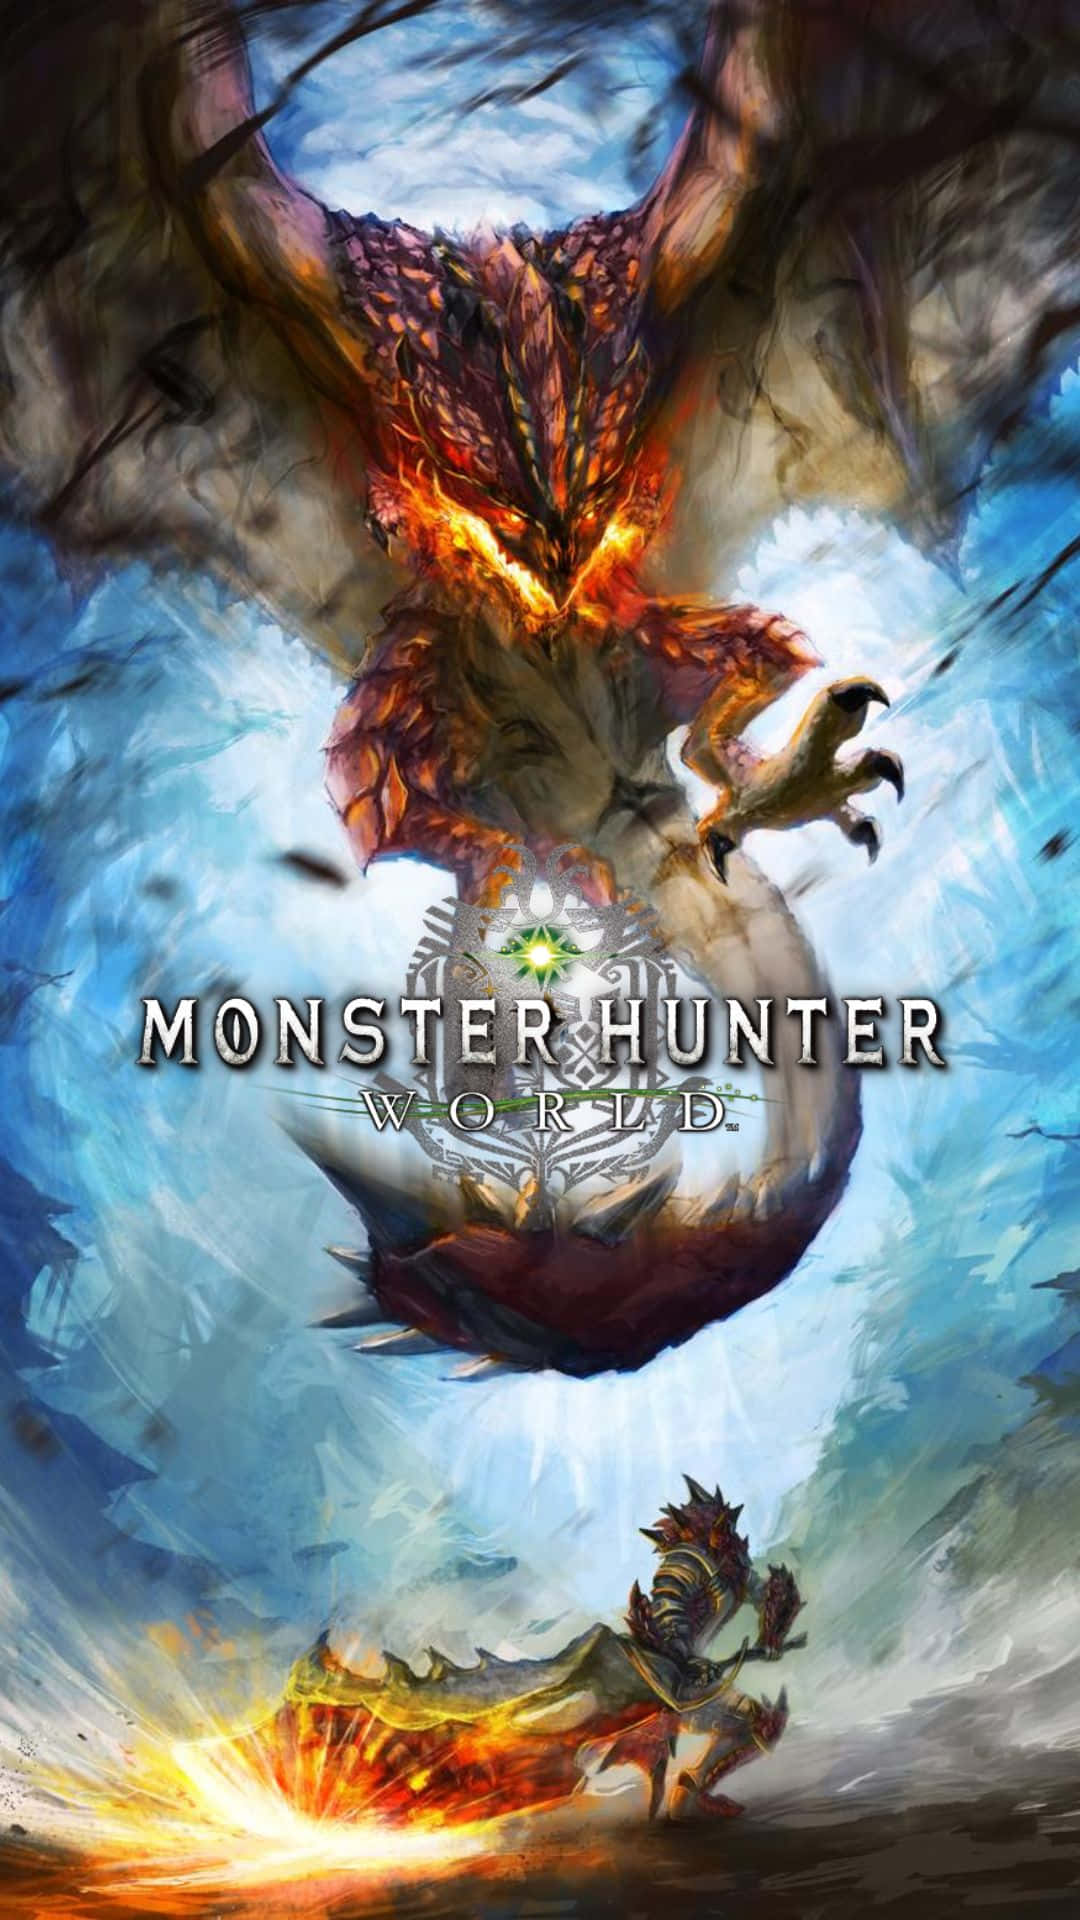 Släpplös Kraften Av Android I Monster Hunter World På Ditt Datorskärmsbakgrund Eller Mobil Bakgrundsbild.